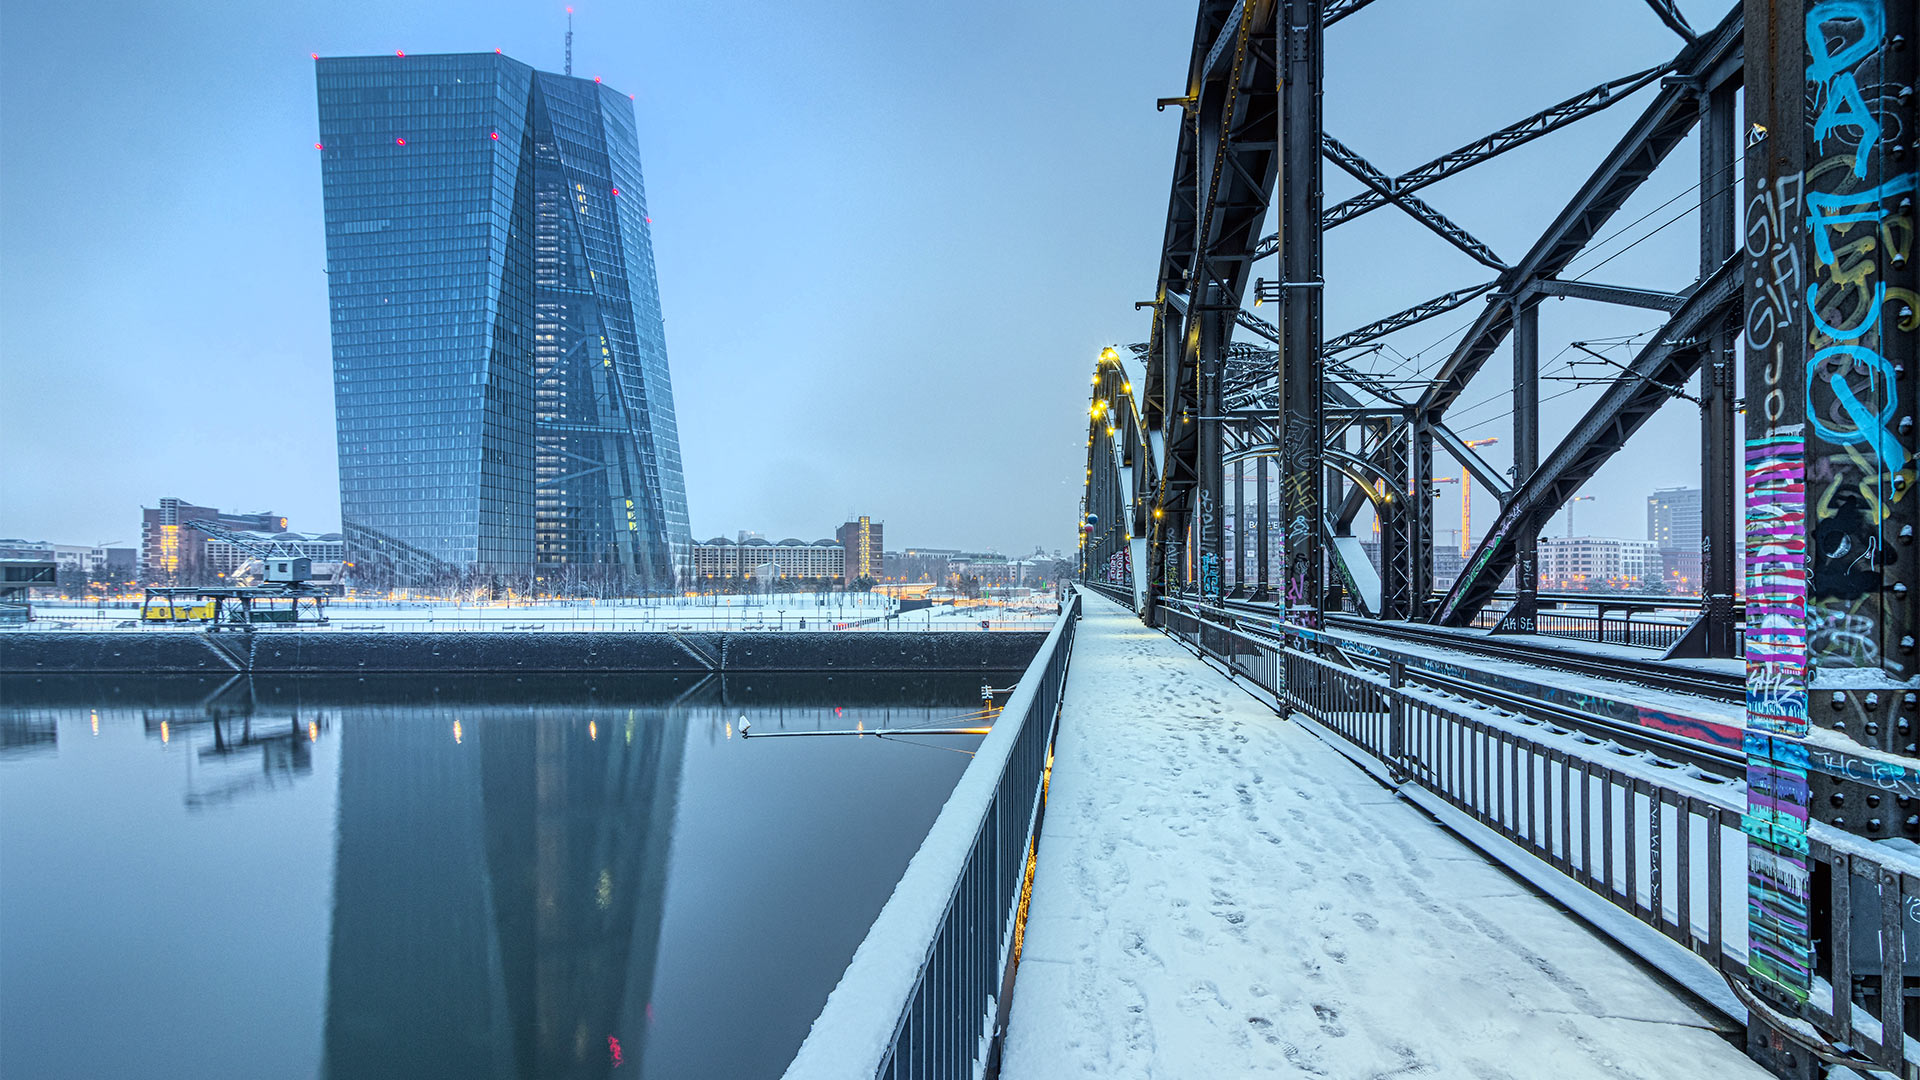 Der EZB-Tower in Frankfurt/Main. | picture alliance / greatif